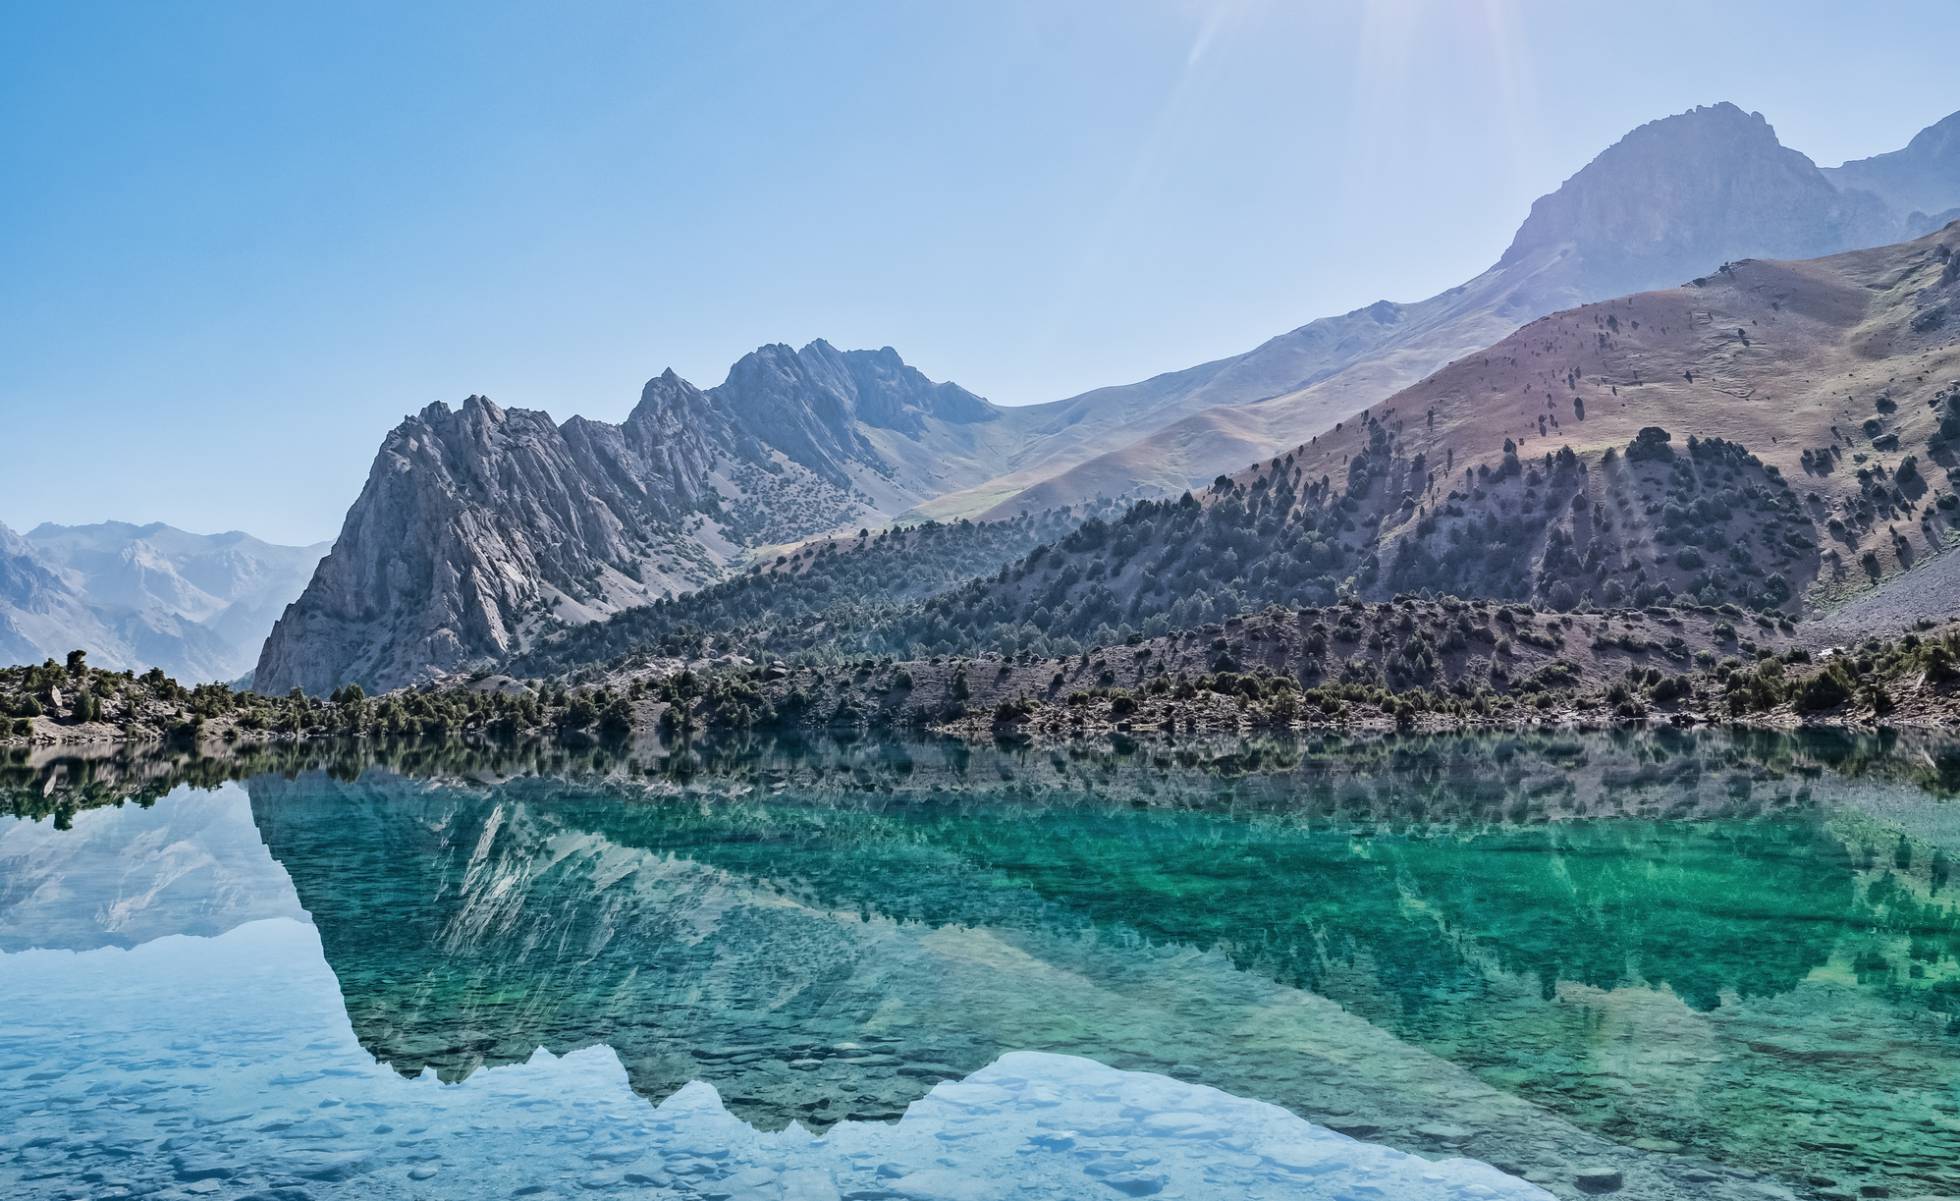 Tayikistán, el destino de viajeros audaces